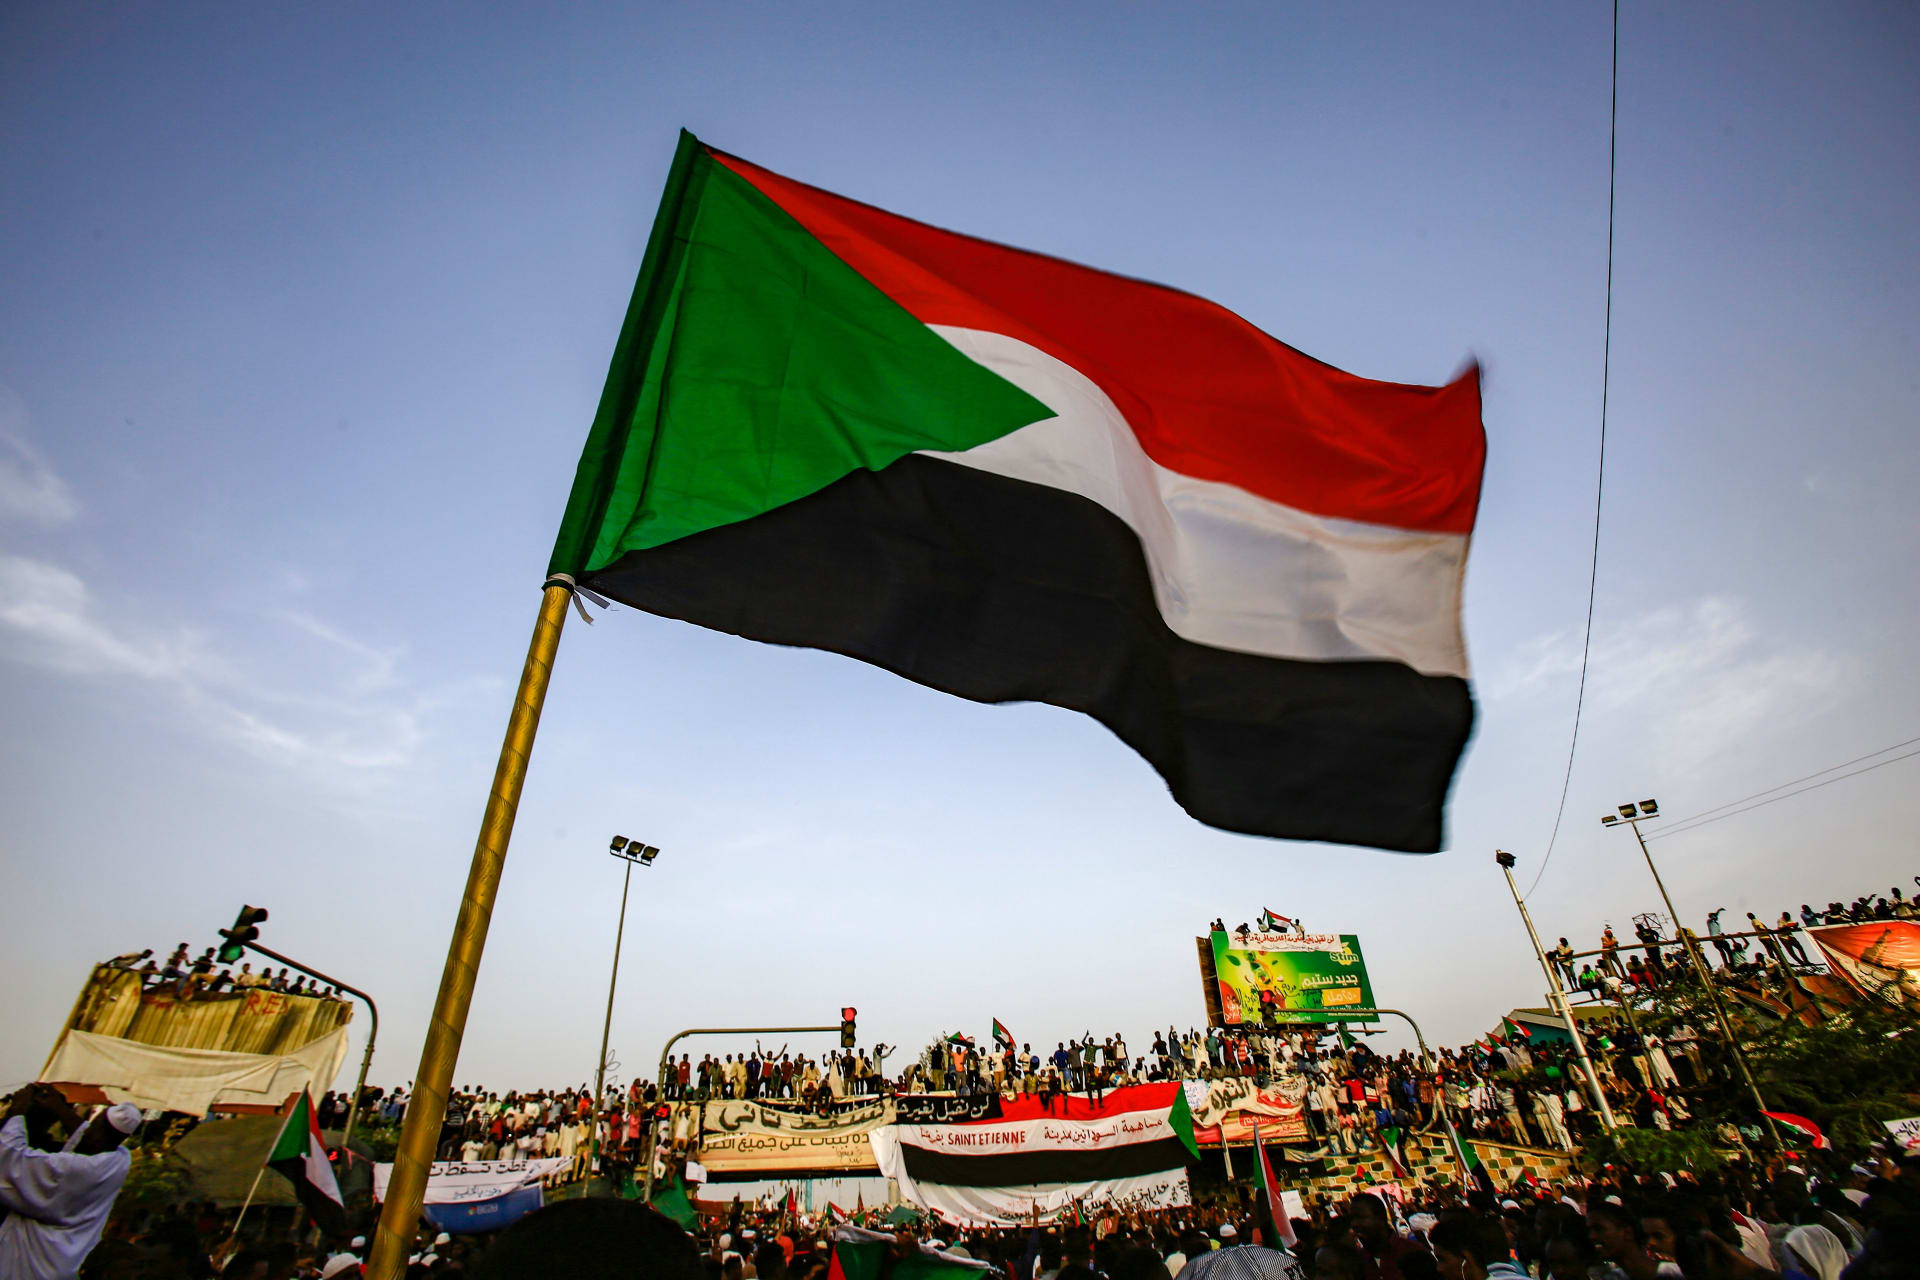 نائب مصري يدعو إحدى الدول لـ"رفع يدها" عن السودان.. ويحذر: القاهرة لن تقف صامتة